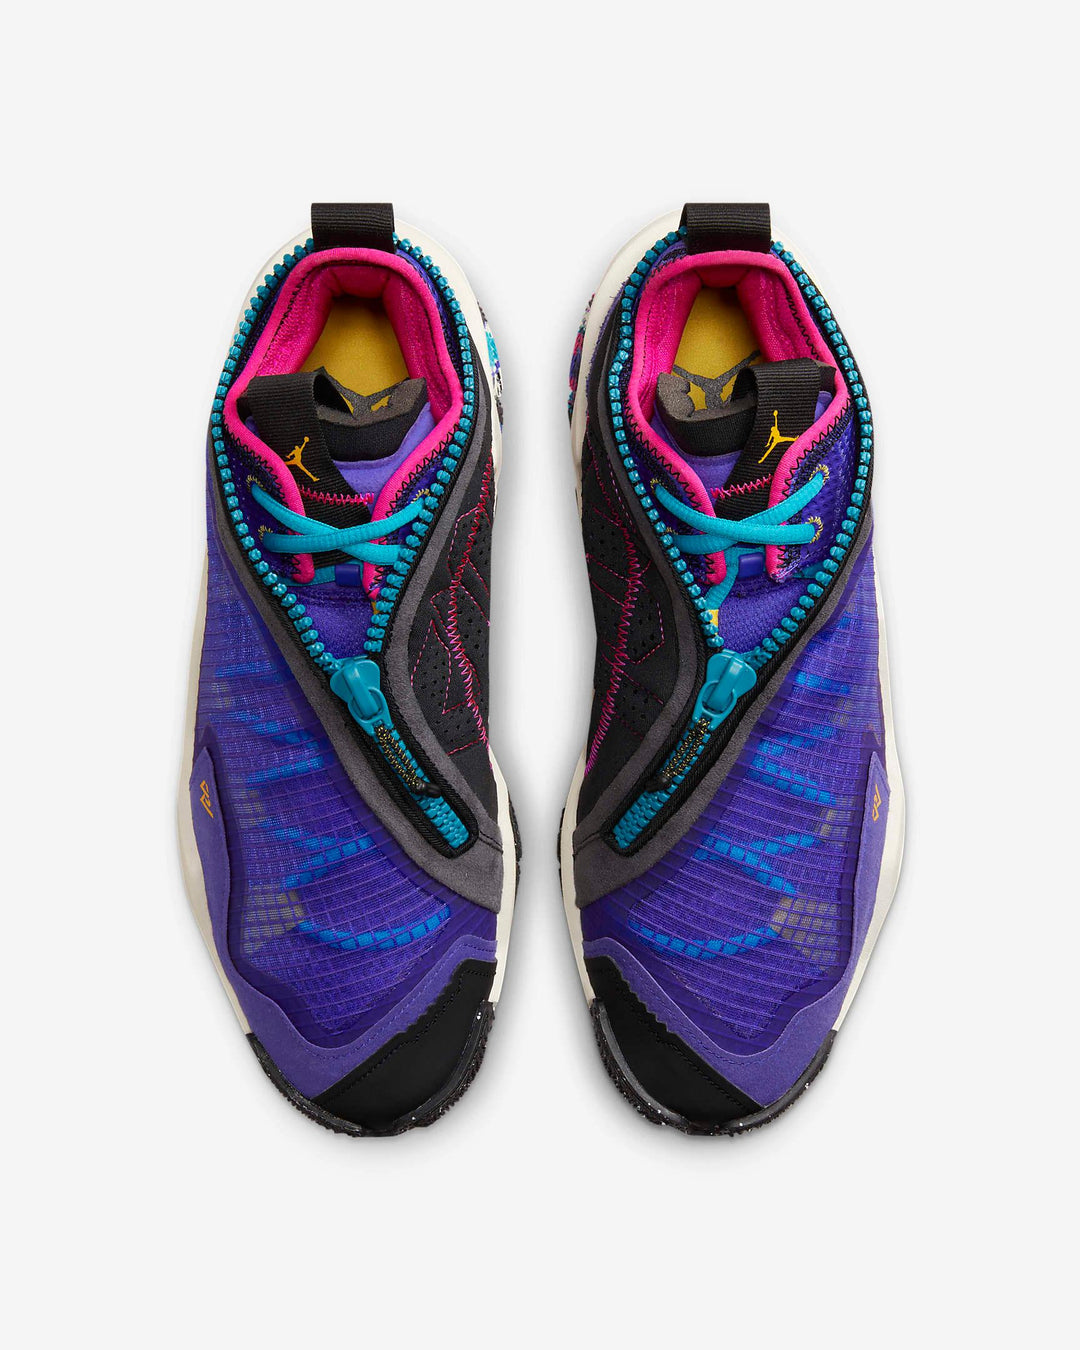 Giày Nike Jordan Why Not .6 PF Men Shoes #Bright Concord - Kallos Vietnam